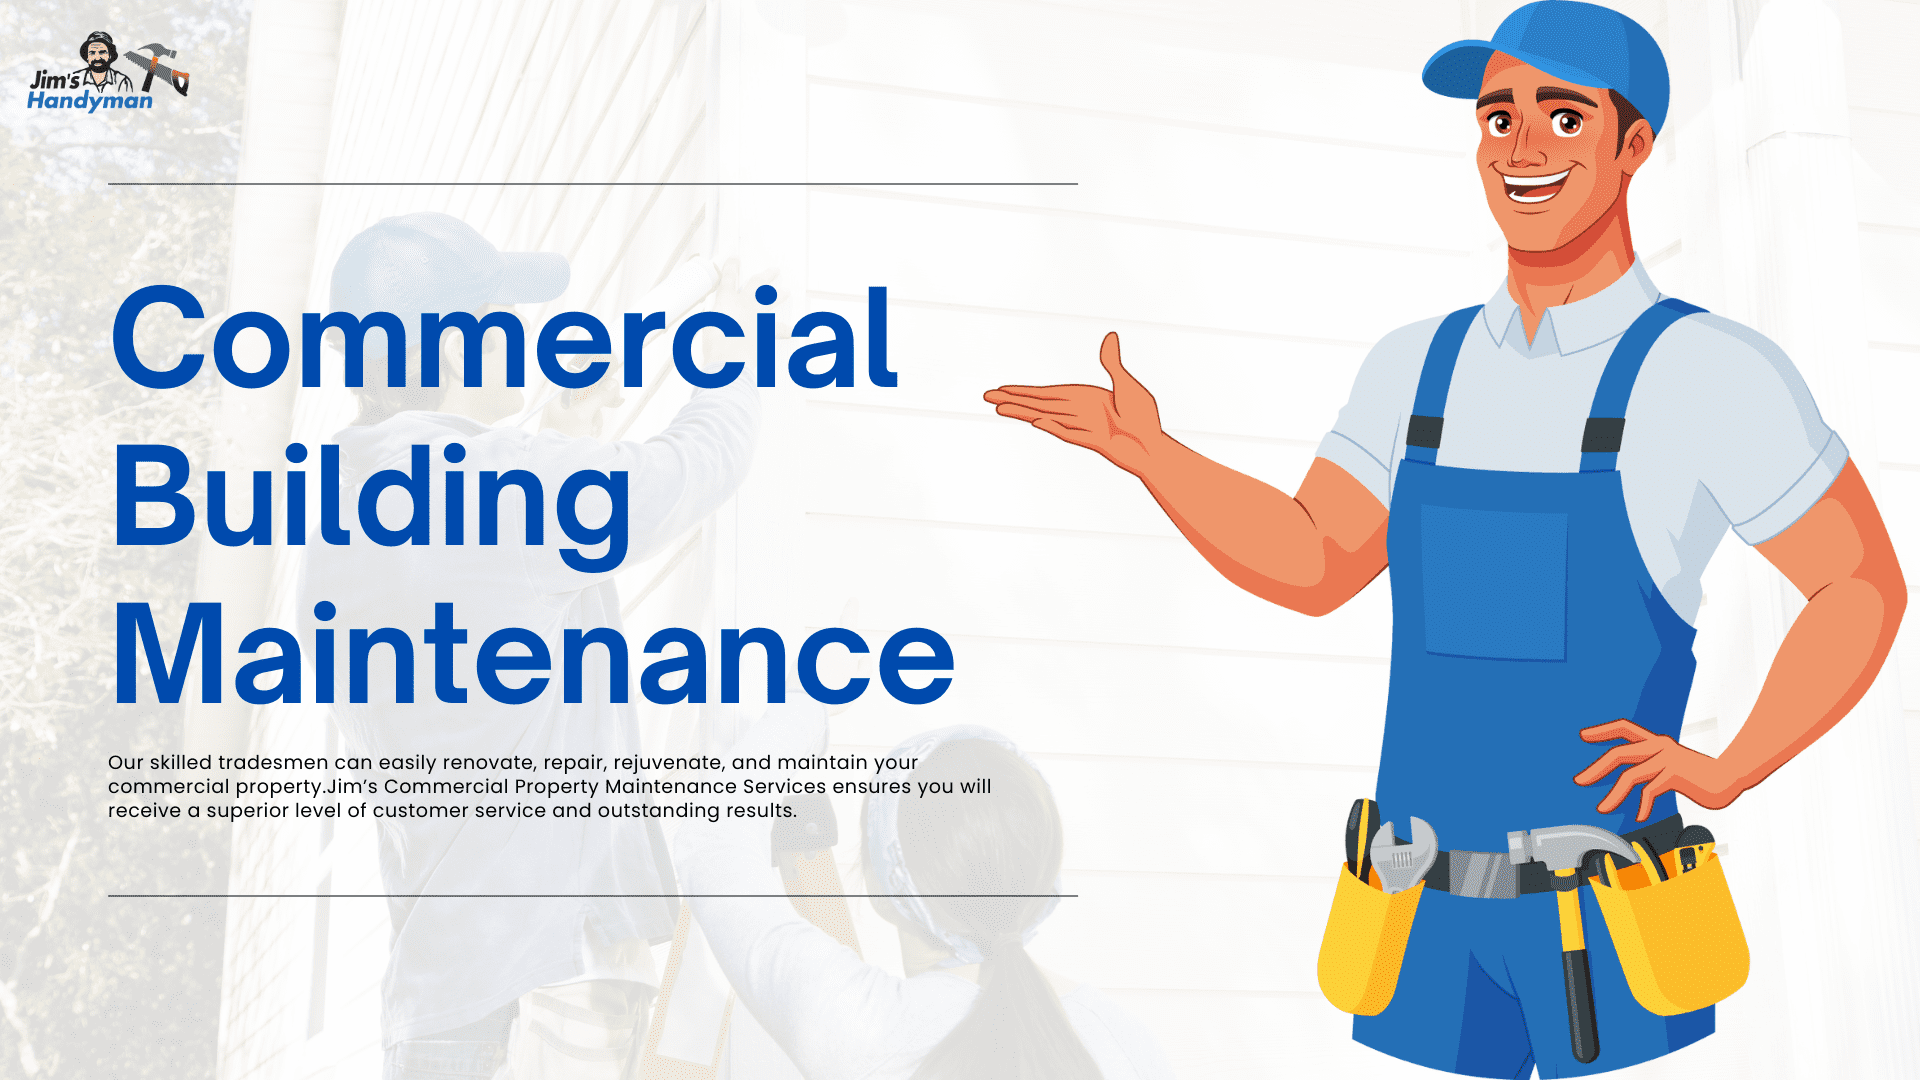 Commercial Building Maintenance | Jim's Handyman